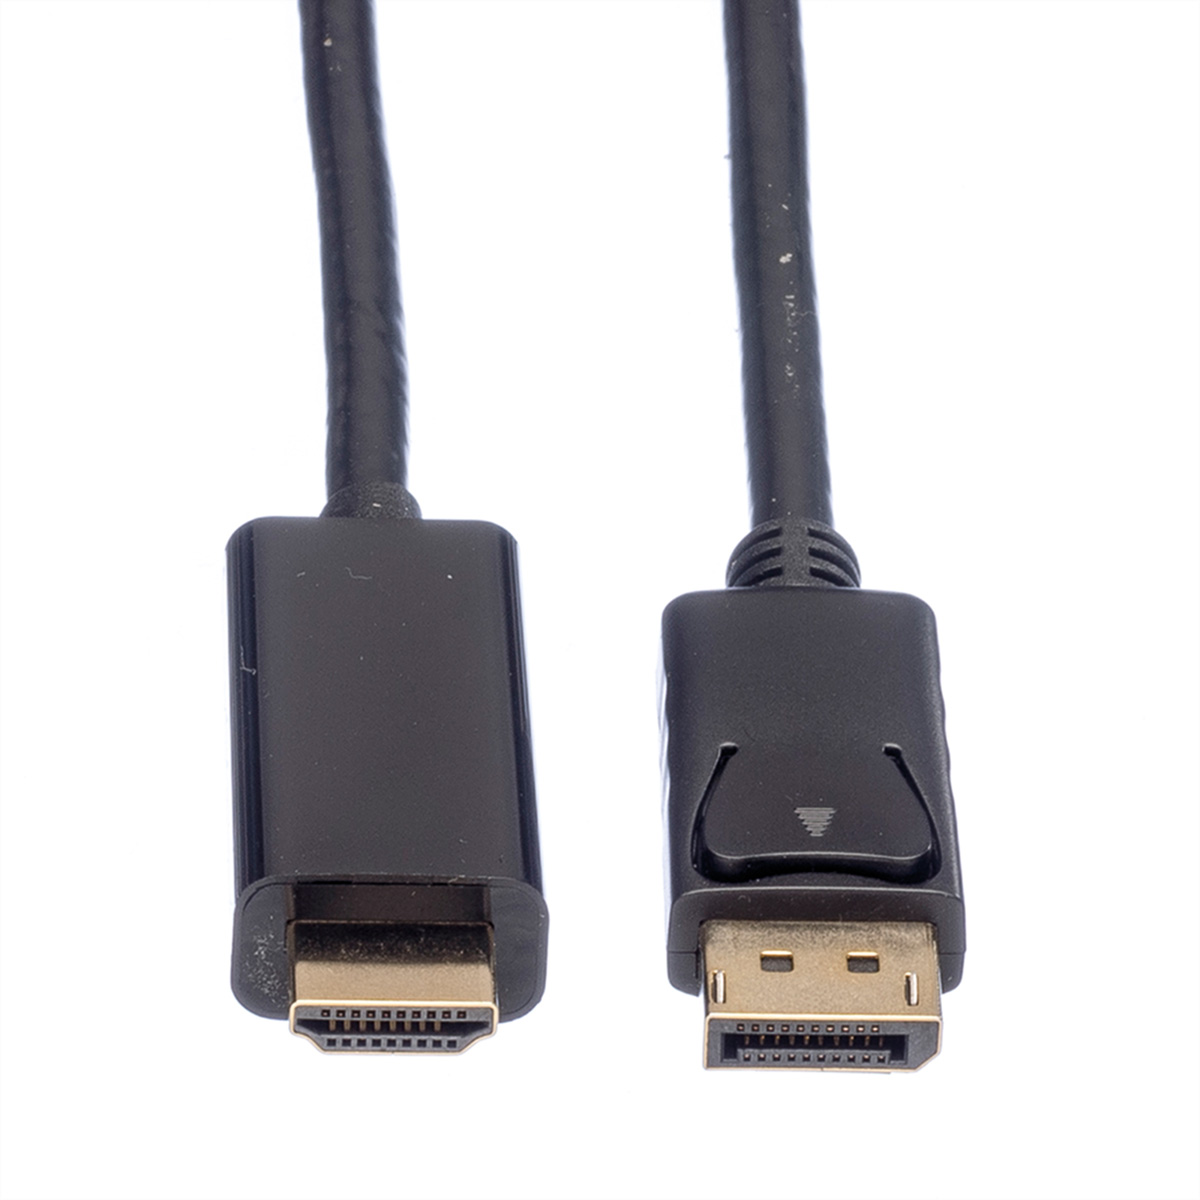 DP-UHDTV-Kabel, - m Kabel DP ST/ST, DisplayPort UHDTV, ROLINE 2